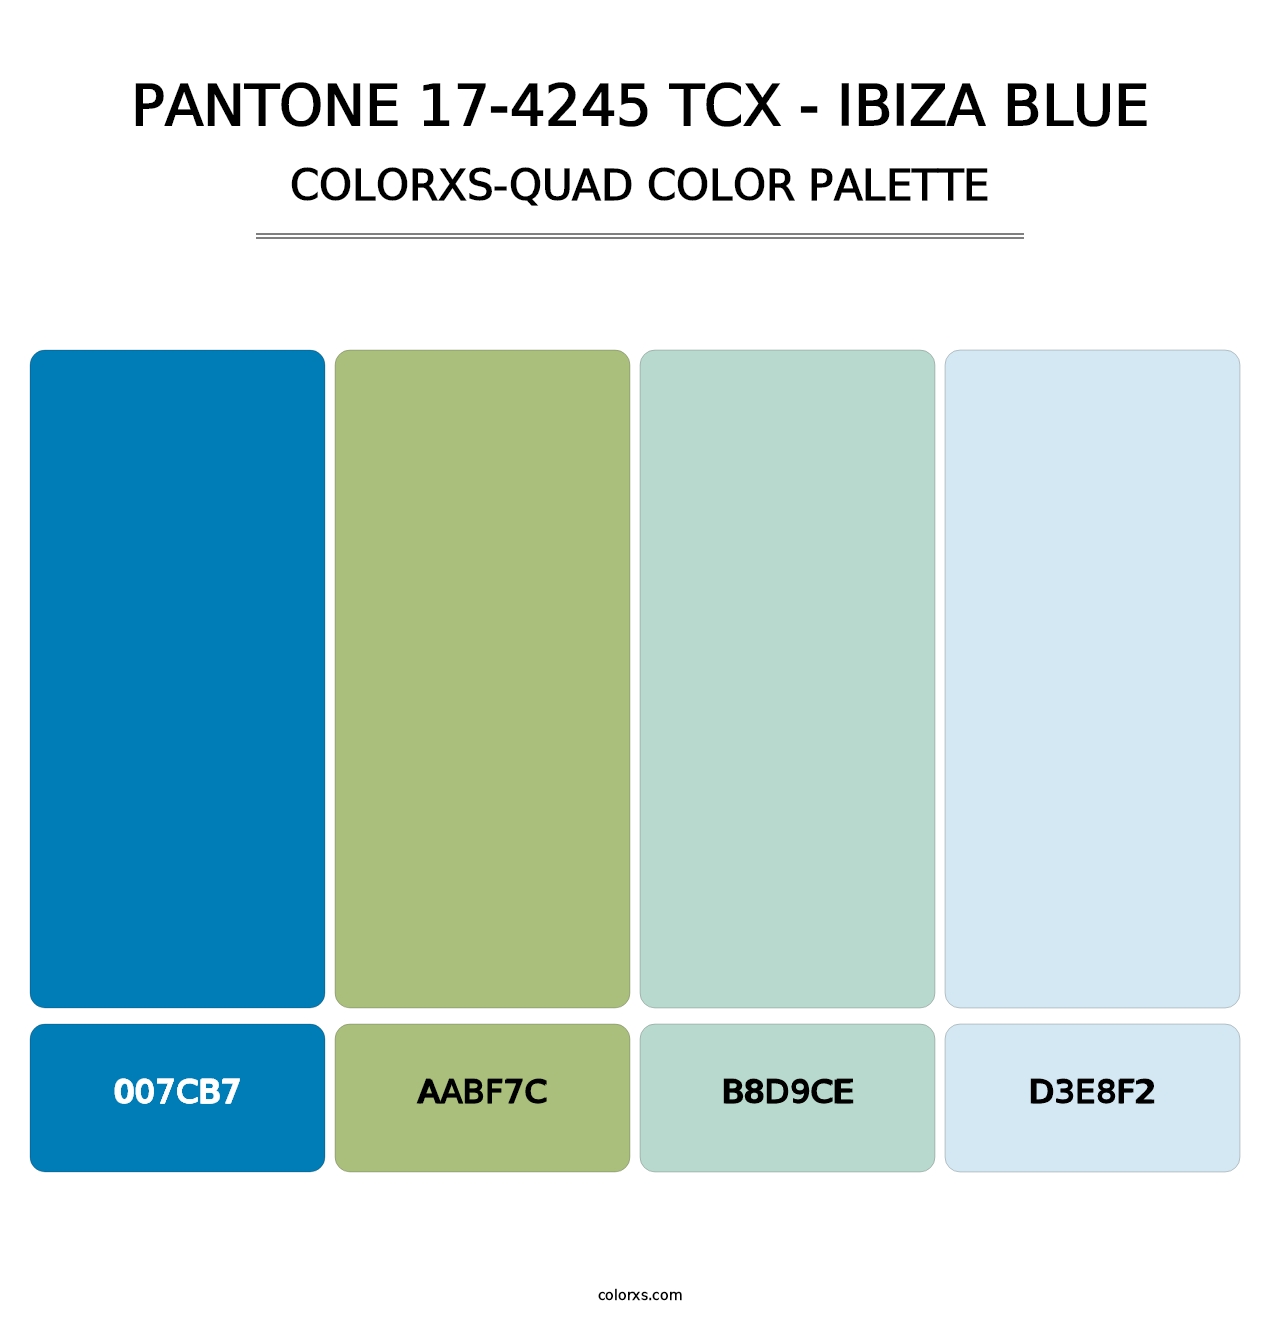 PANTONE 17-4245 TCX - Ibiza Blue - Colorxs Quad Palette